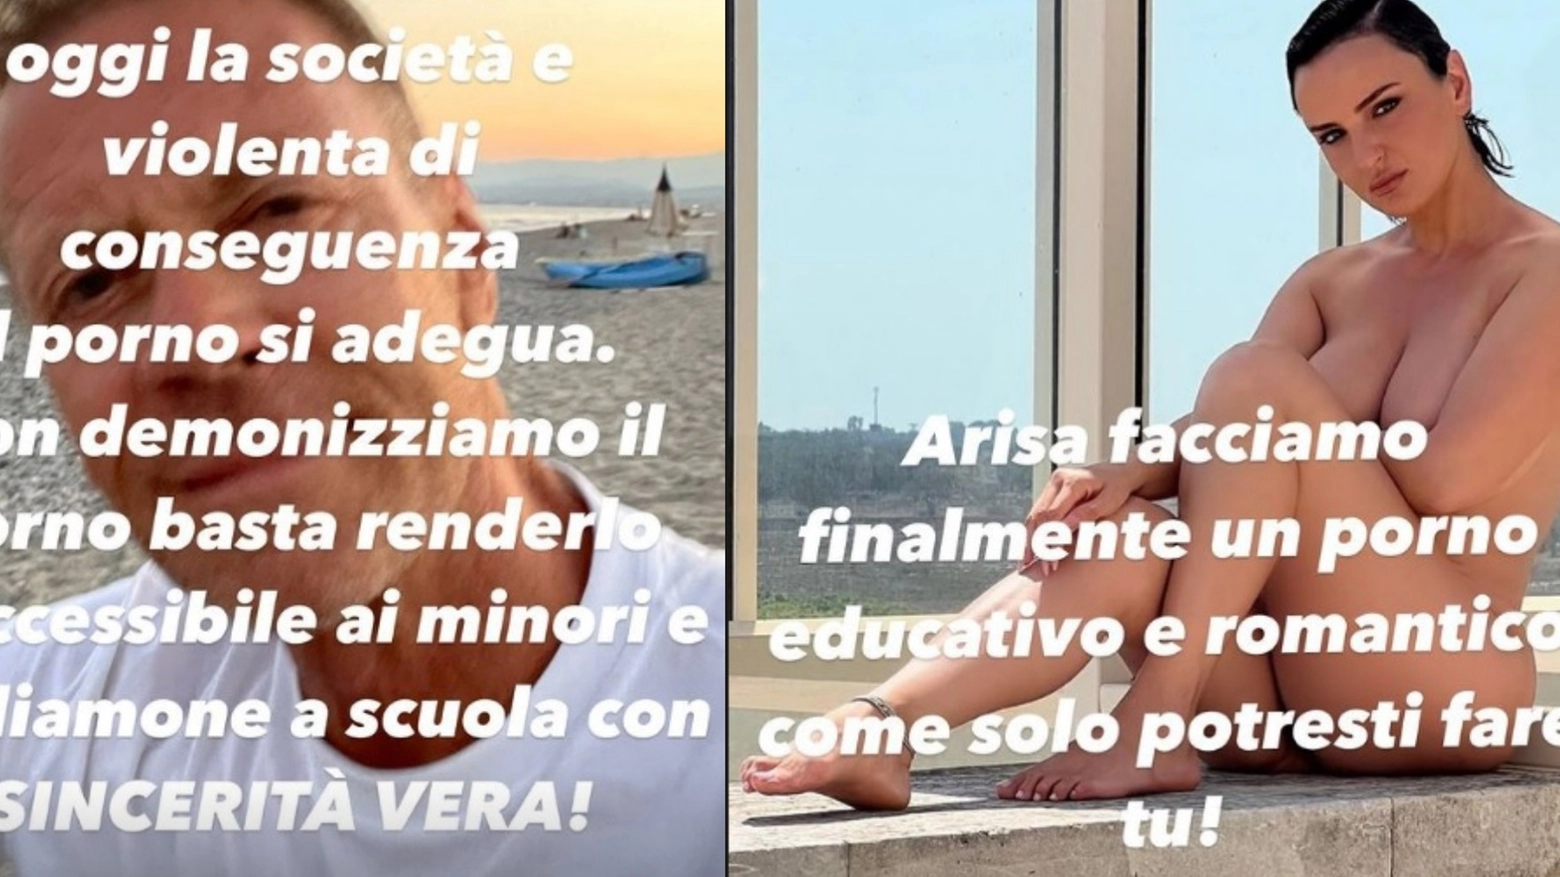 La proposta di Rocco Siffredi: "Arisa facciamo un porno educativo e romantico"